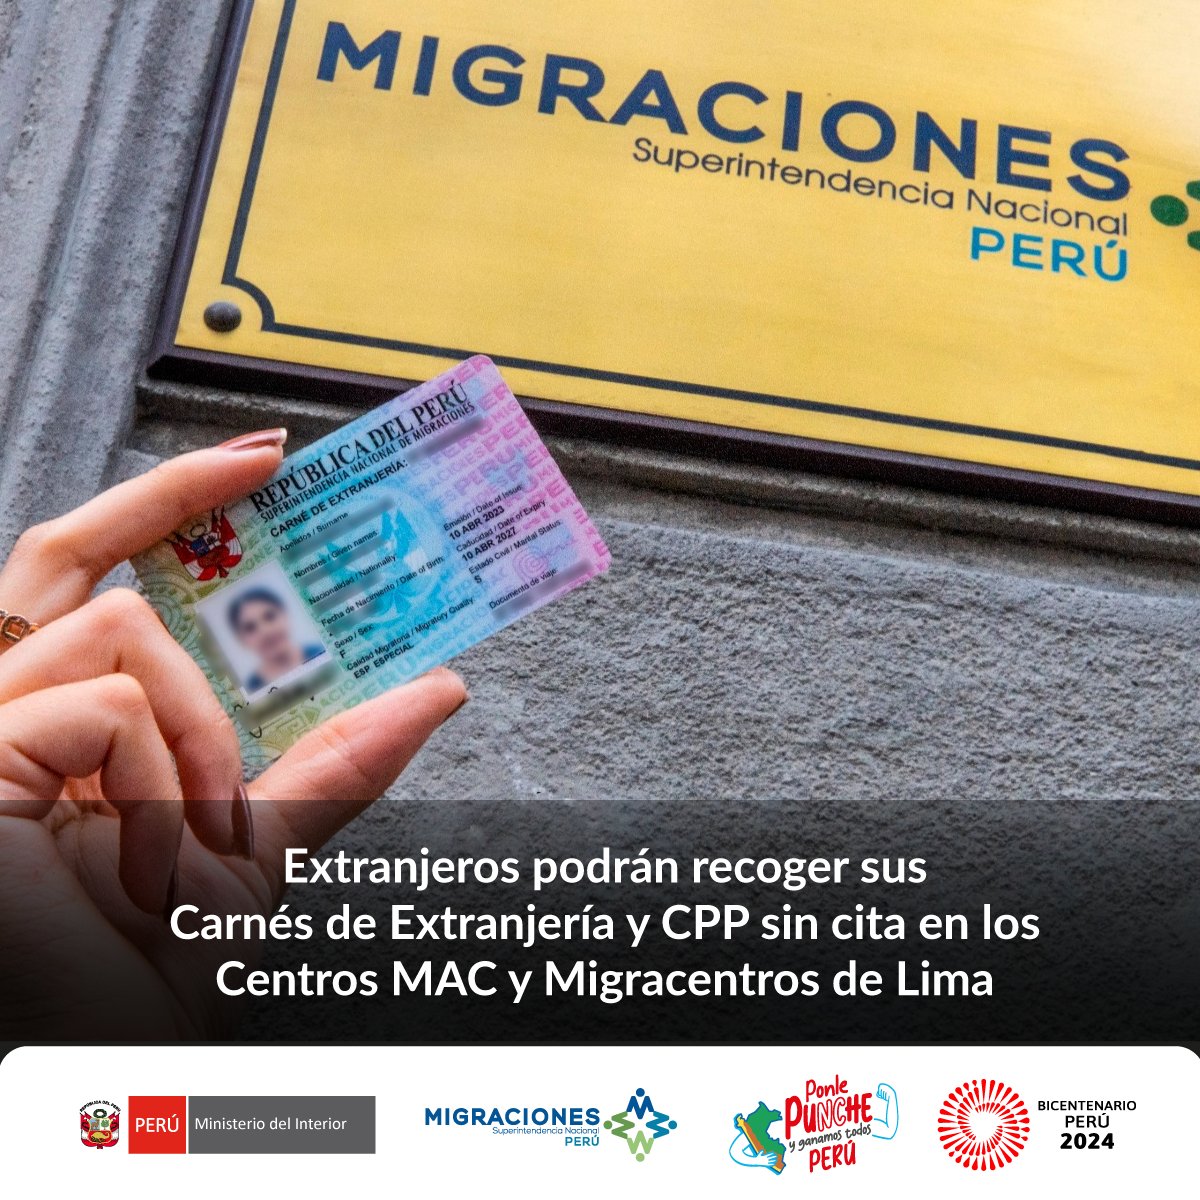 Para agilizar el recojo de Carnés de Extranjería y CPP, extranjeros serán atendidos sin cita en los @CentrosMAC y @Migracentro de Lima. Los esperamos de lunes a viernes de 8:30 a. m. a 5:00 p. m. y sábados de 8:30 a. m. a 1:00 p. m.

#NotaDePrensa ➡ gob.pe/es/n/955549